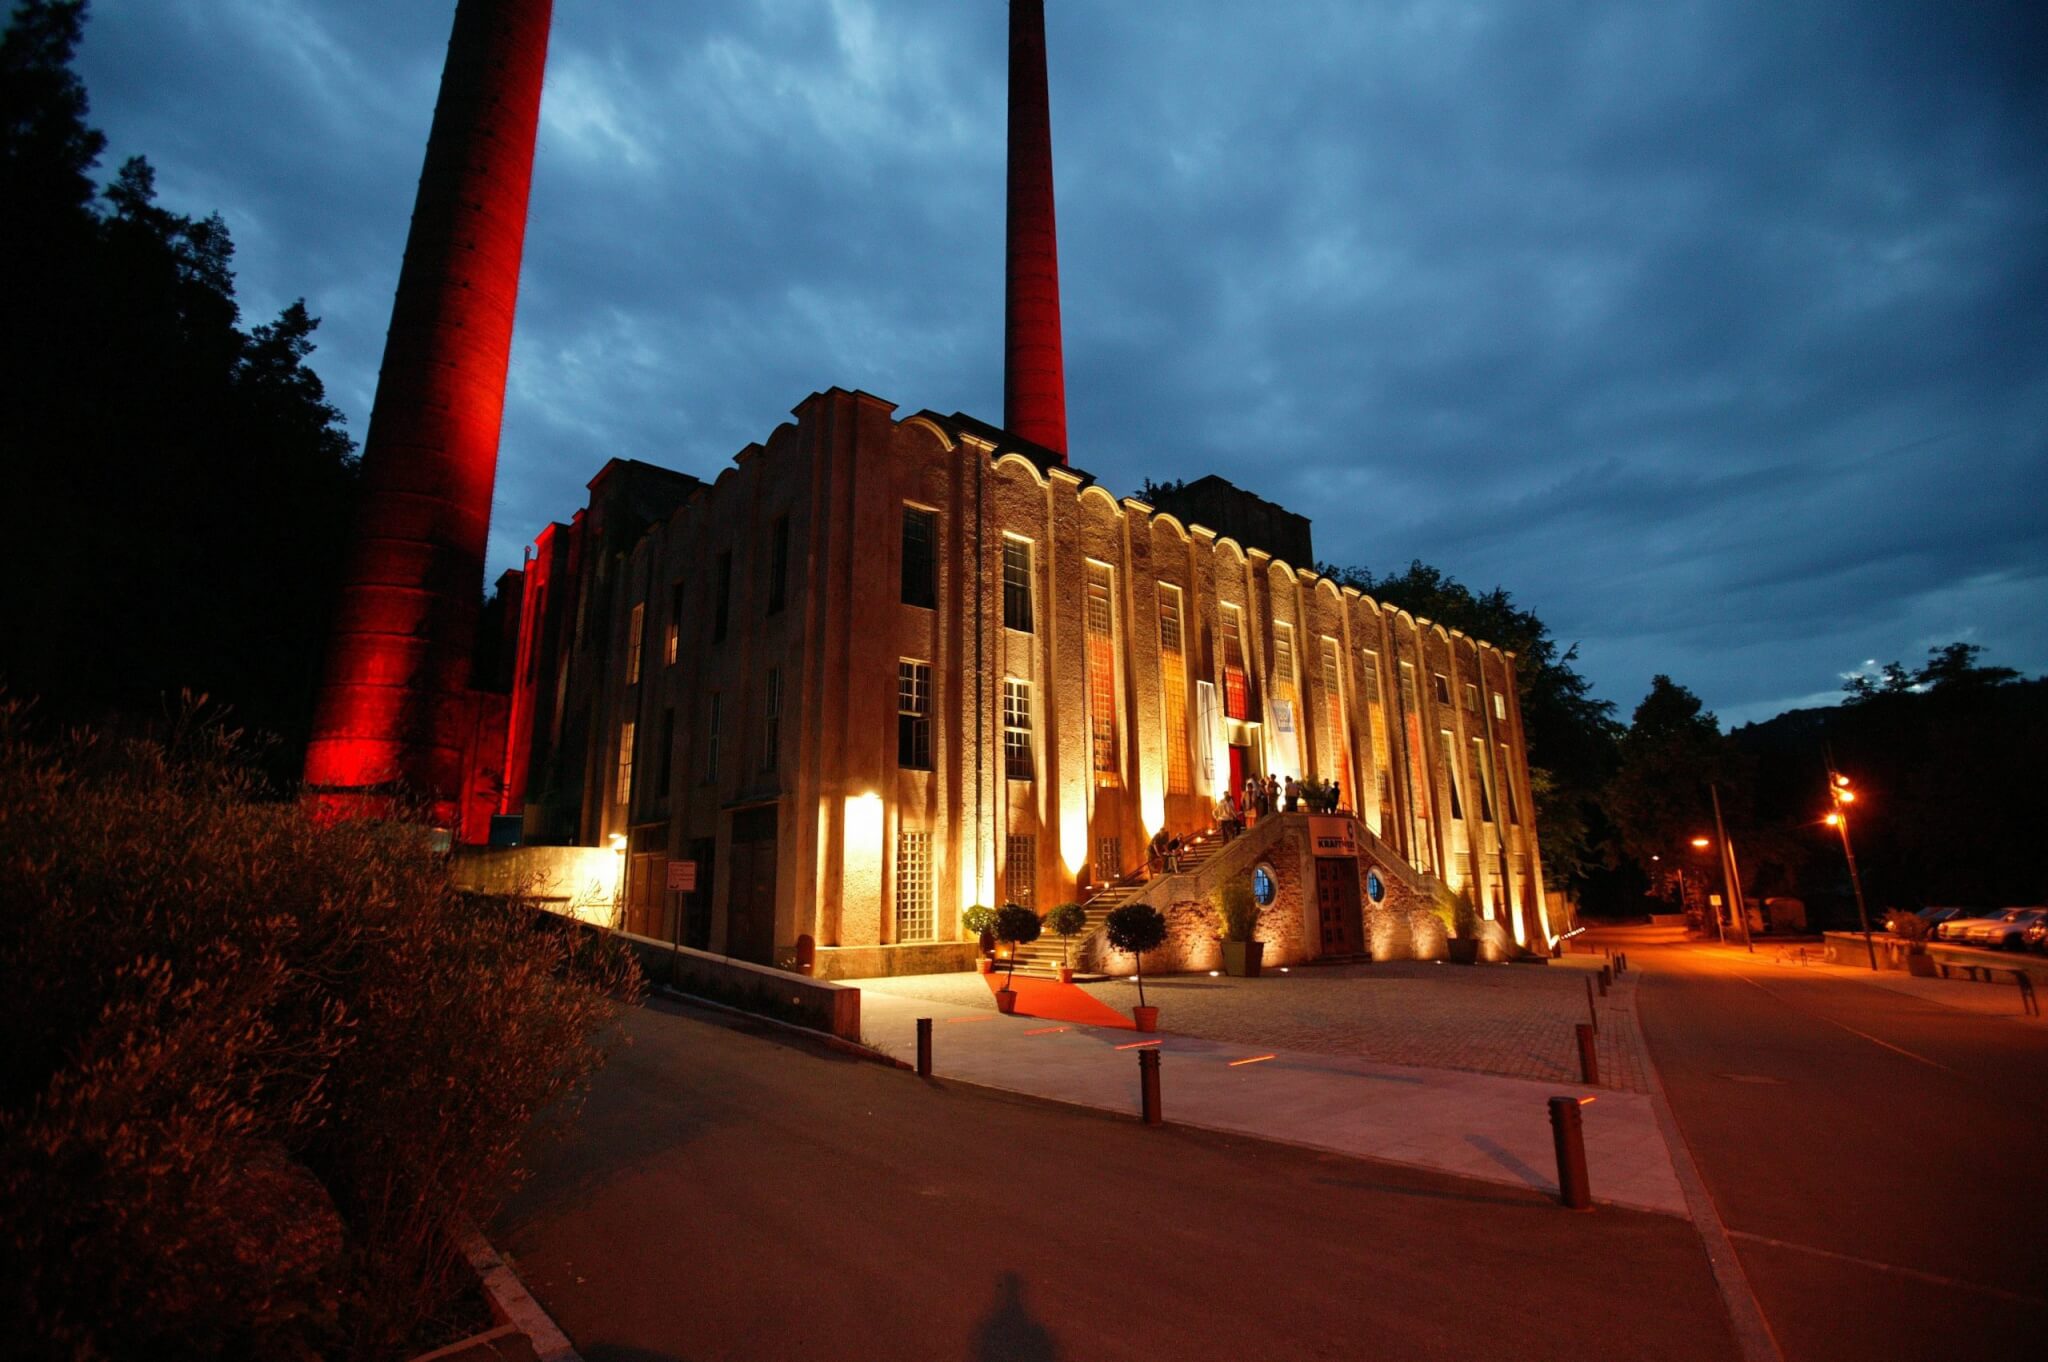 Das Kraftwerk Rottweil - eines der eindrucksvollsten Industriegebäude der Jahrhundertwende